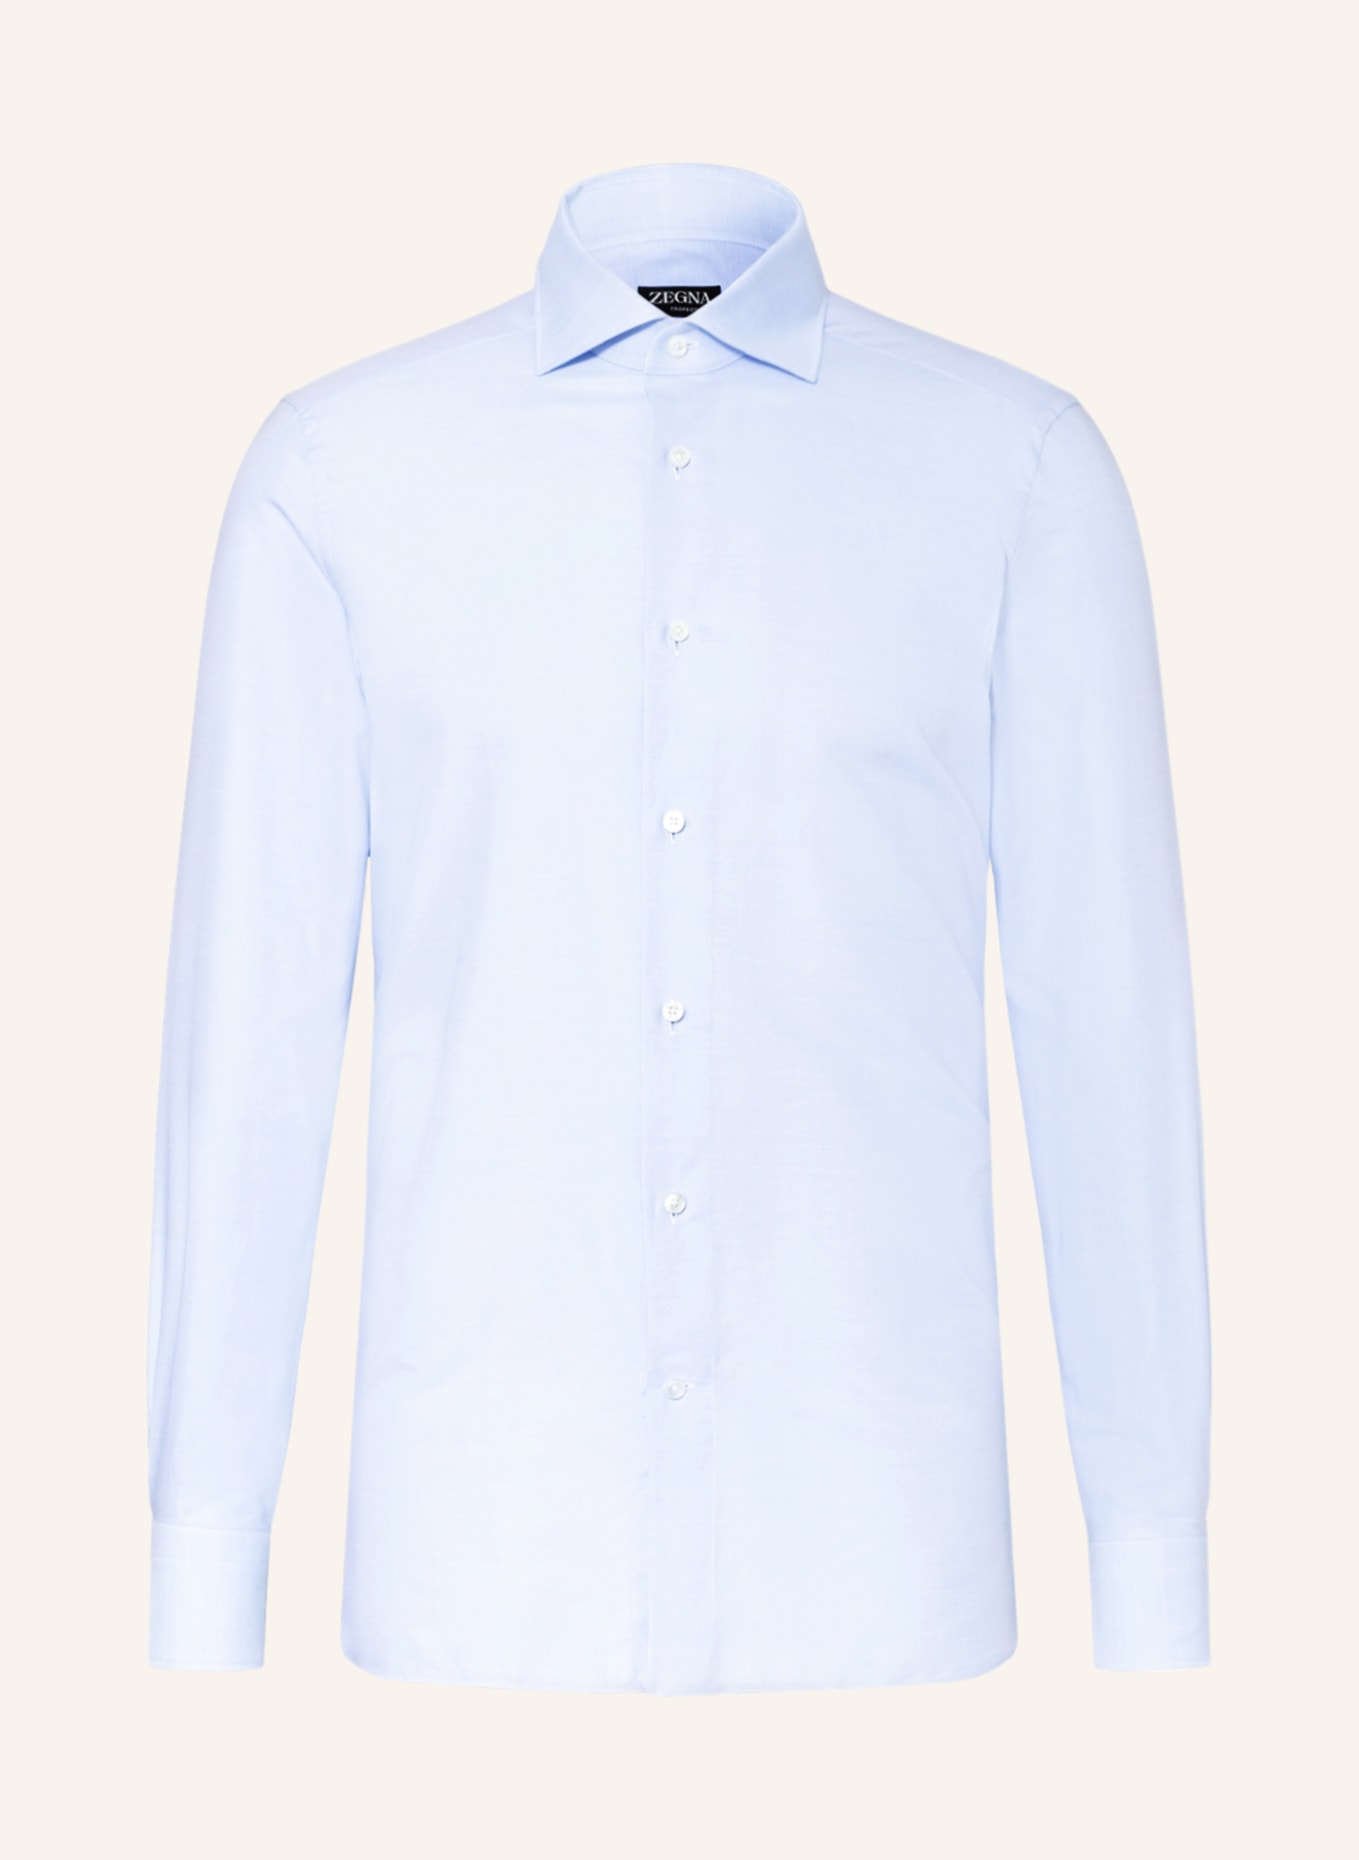 ZEGNA Shirt slim fit, Color: LIGHT BLUE (Image 1)